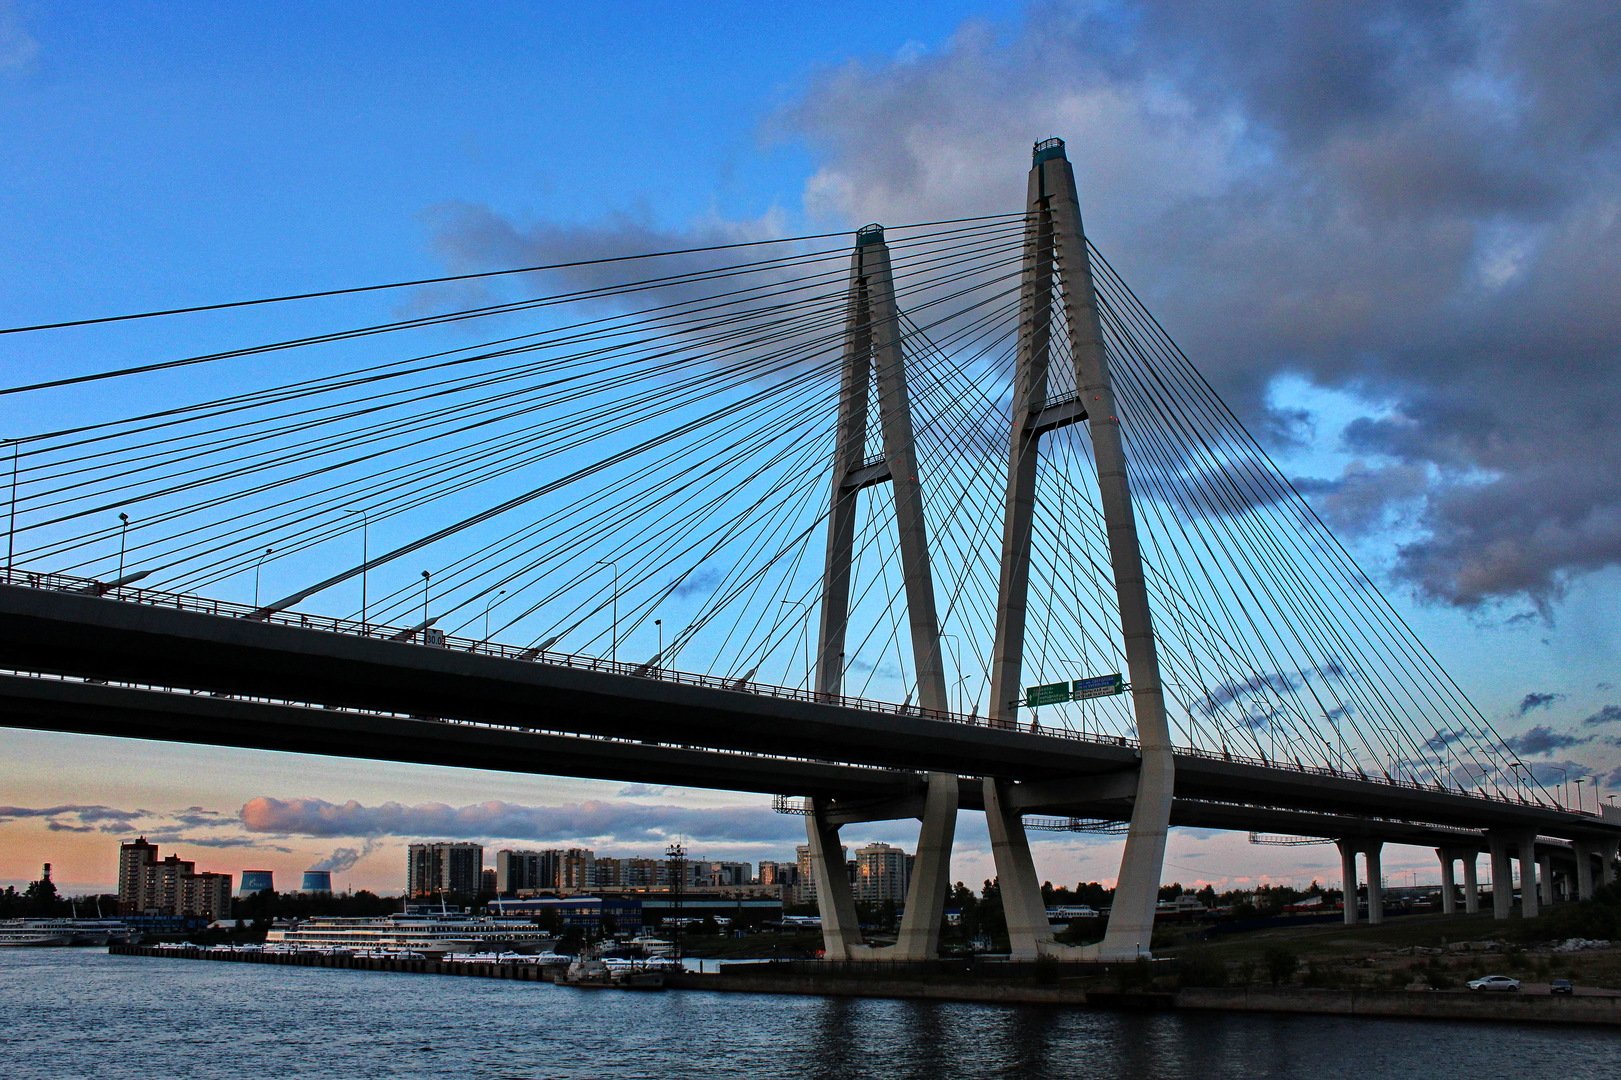 большой обуховский мост в санкт петербурге